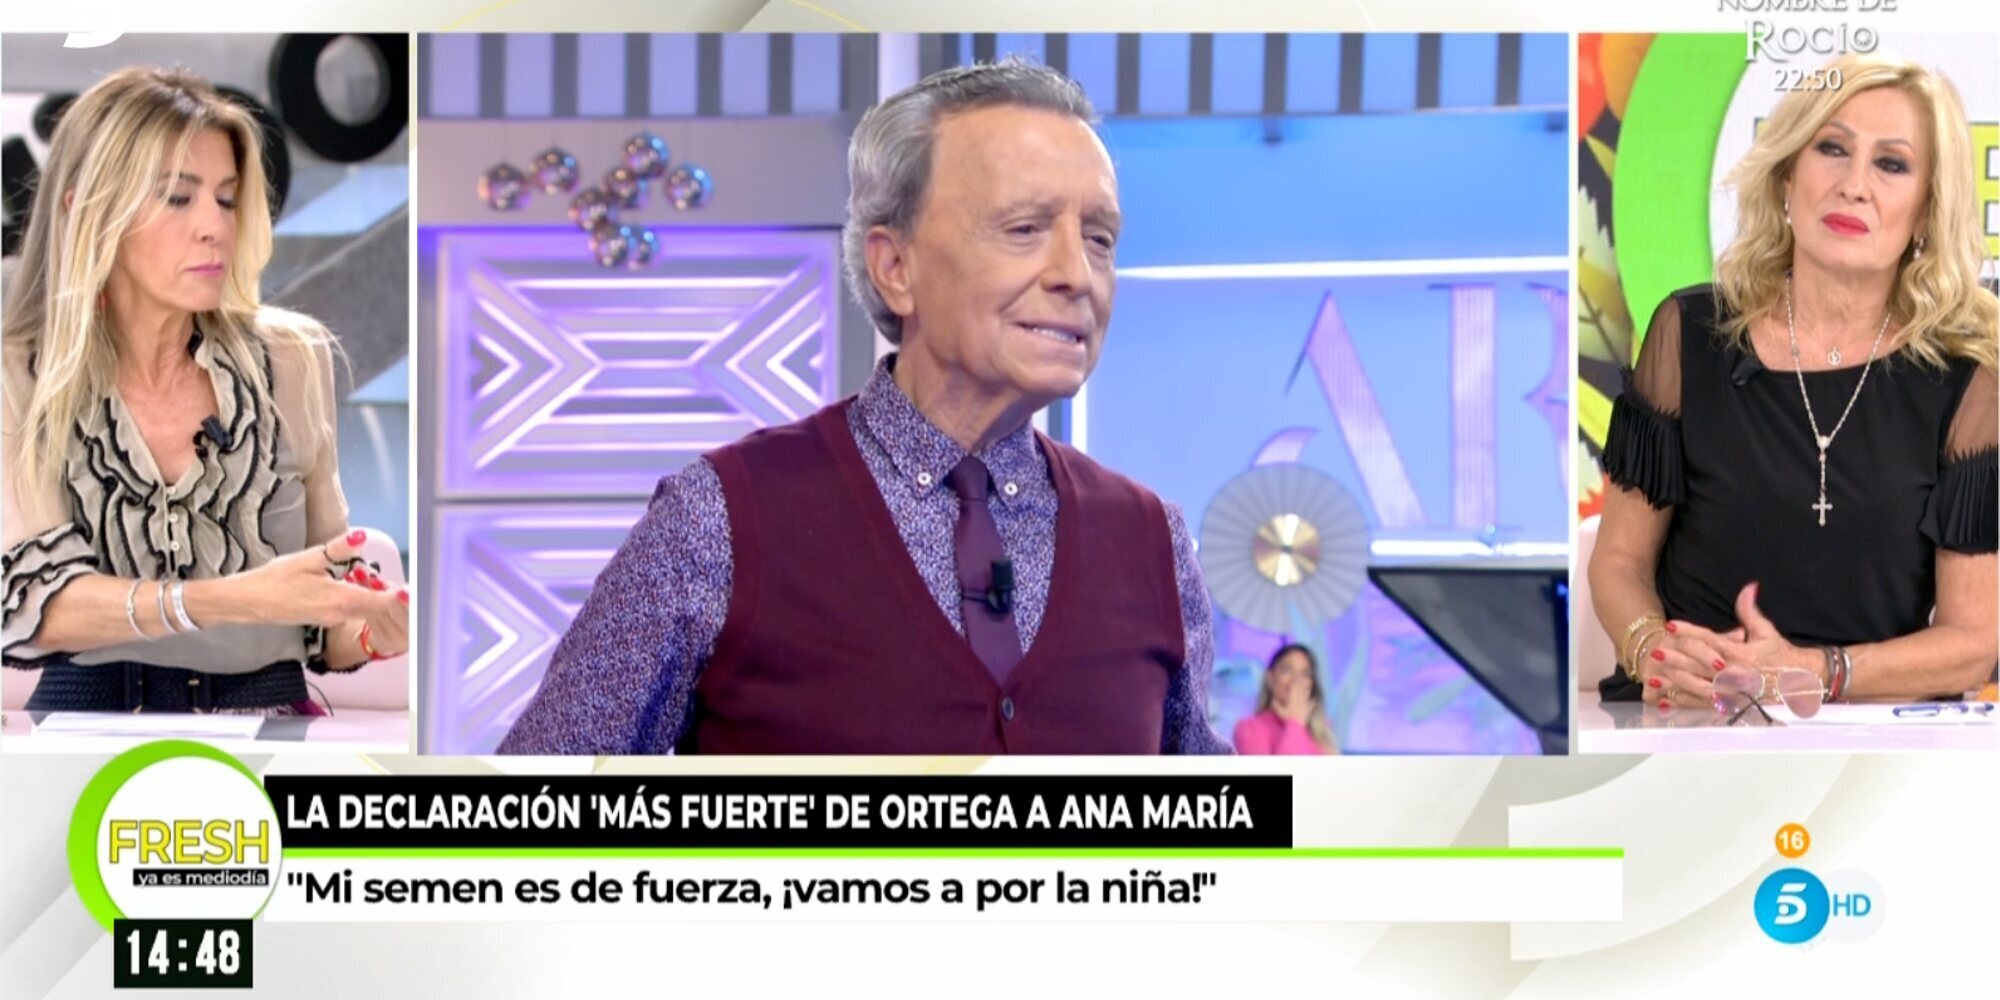 Rosa Benito regresa a 'Ya es mediodía' tras la entrevista de Ortega Cano: "Yo lo he visto bien, como es él"